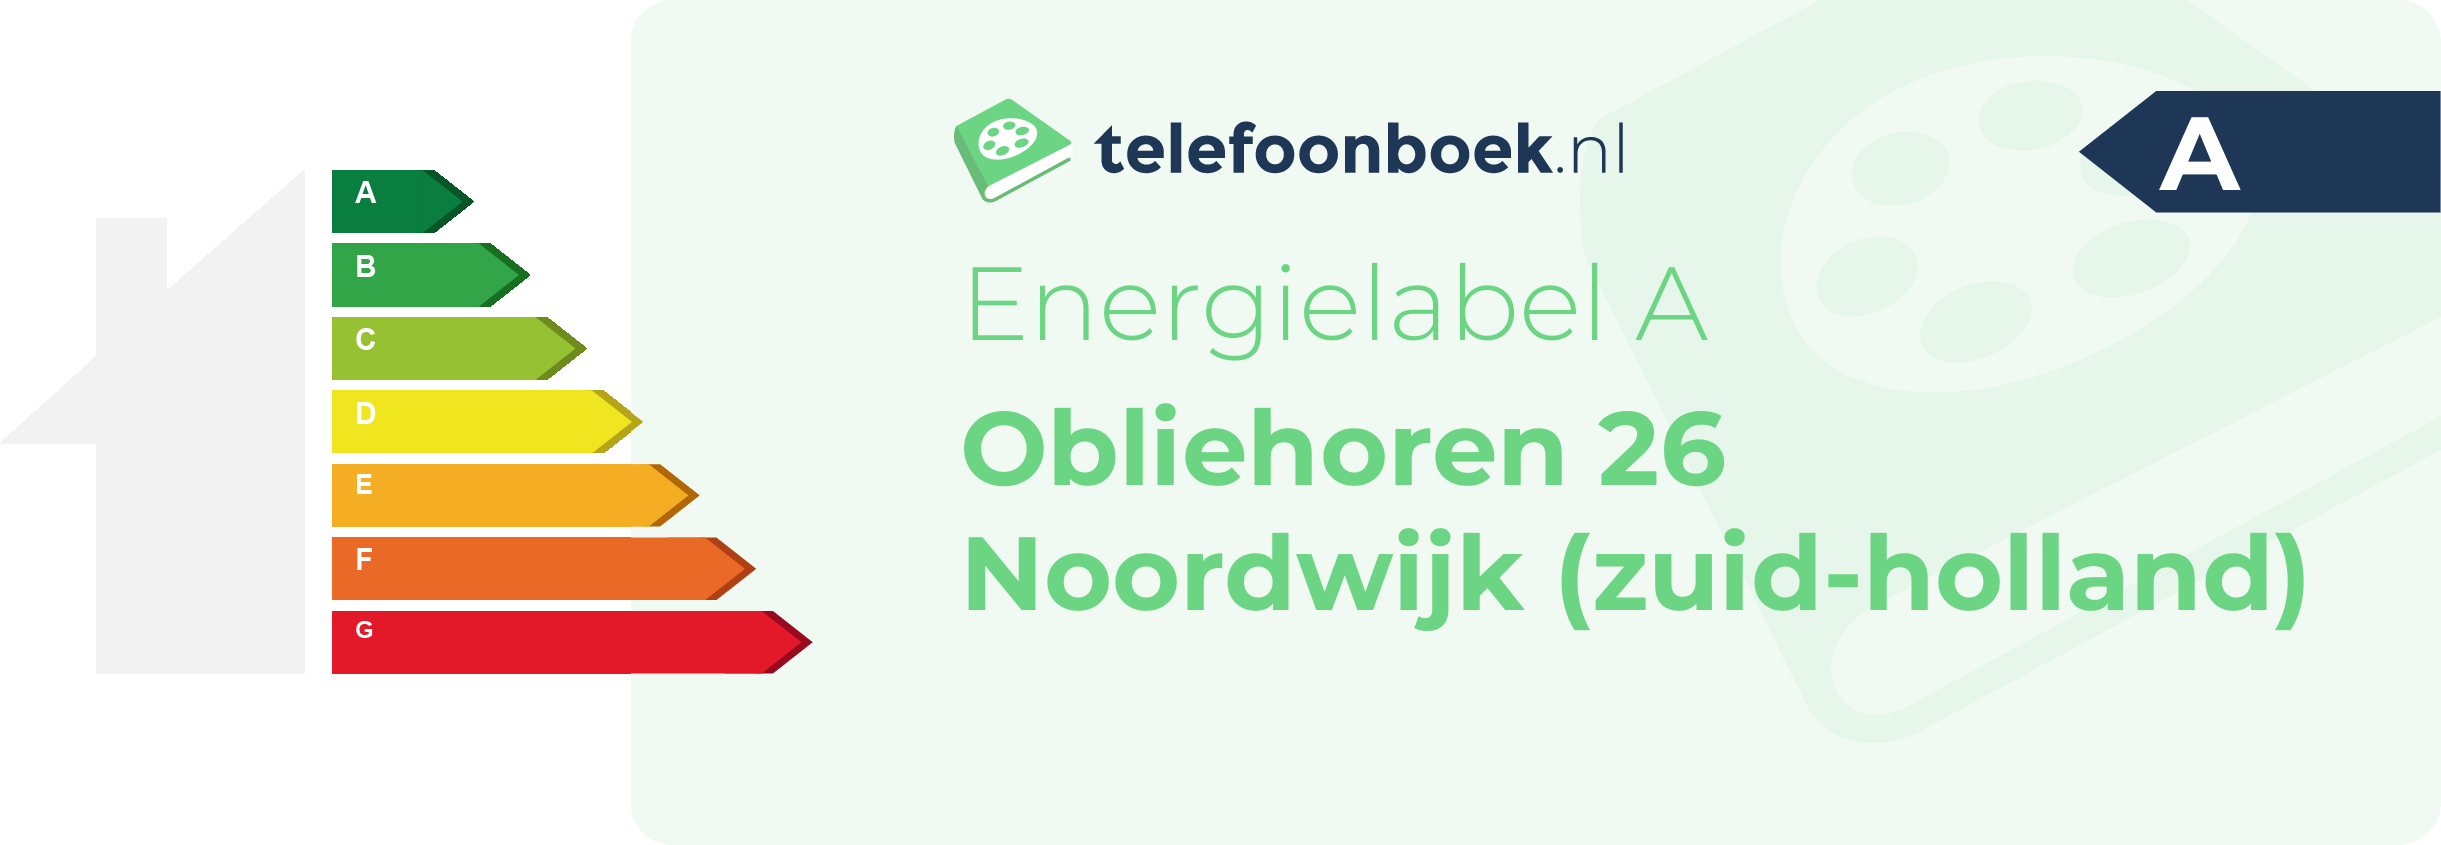 Energielabel Obliehoren 26 Noordwijk (Zuid-Holland)